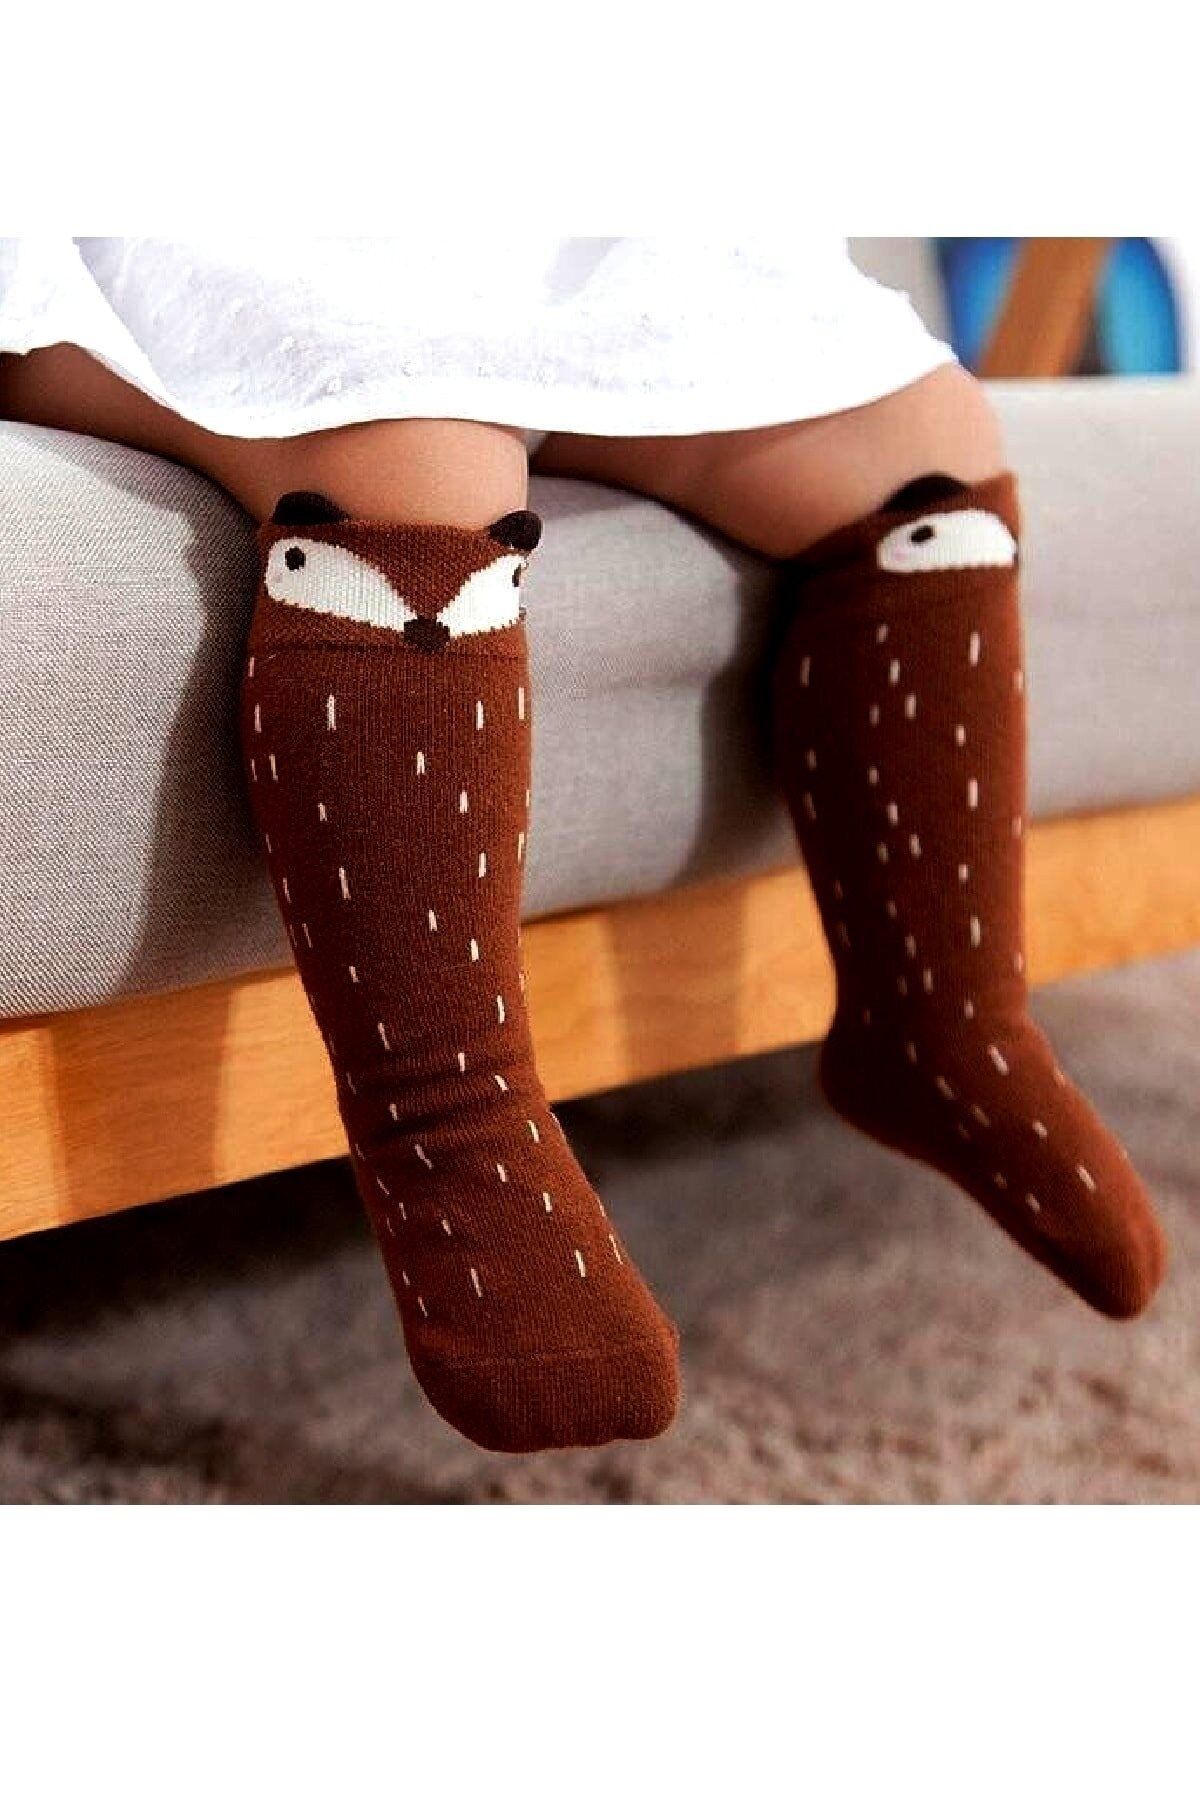 Panowill Design Tilki Desenli Unisex Bebek Diz Altı Çorabı Tilkili Dizaltı Çorap